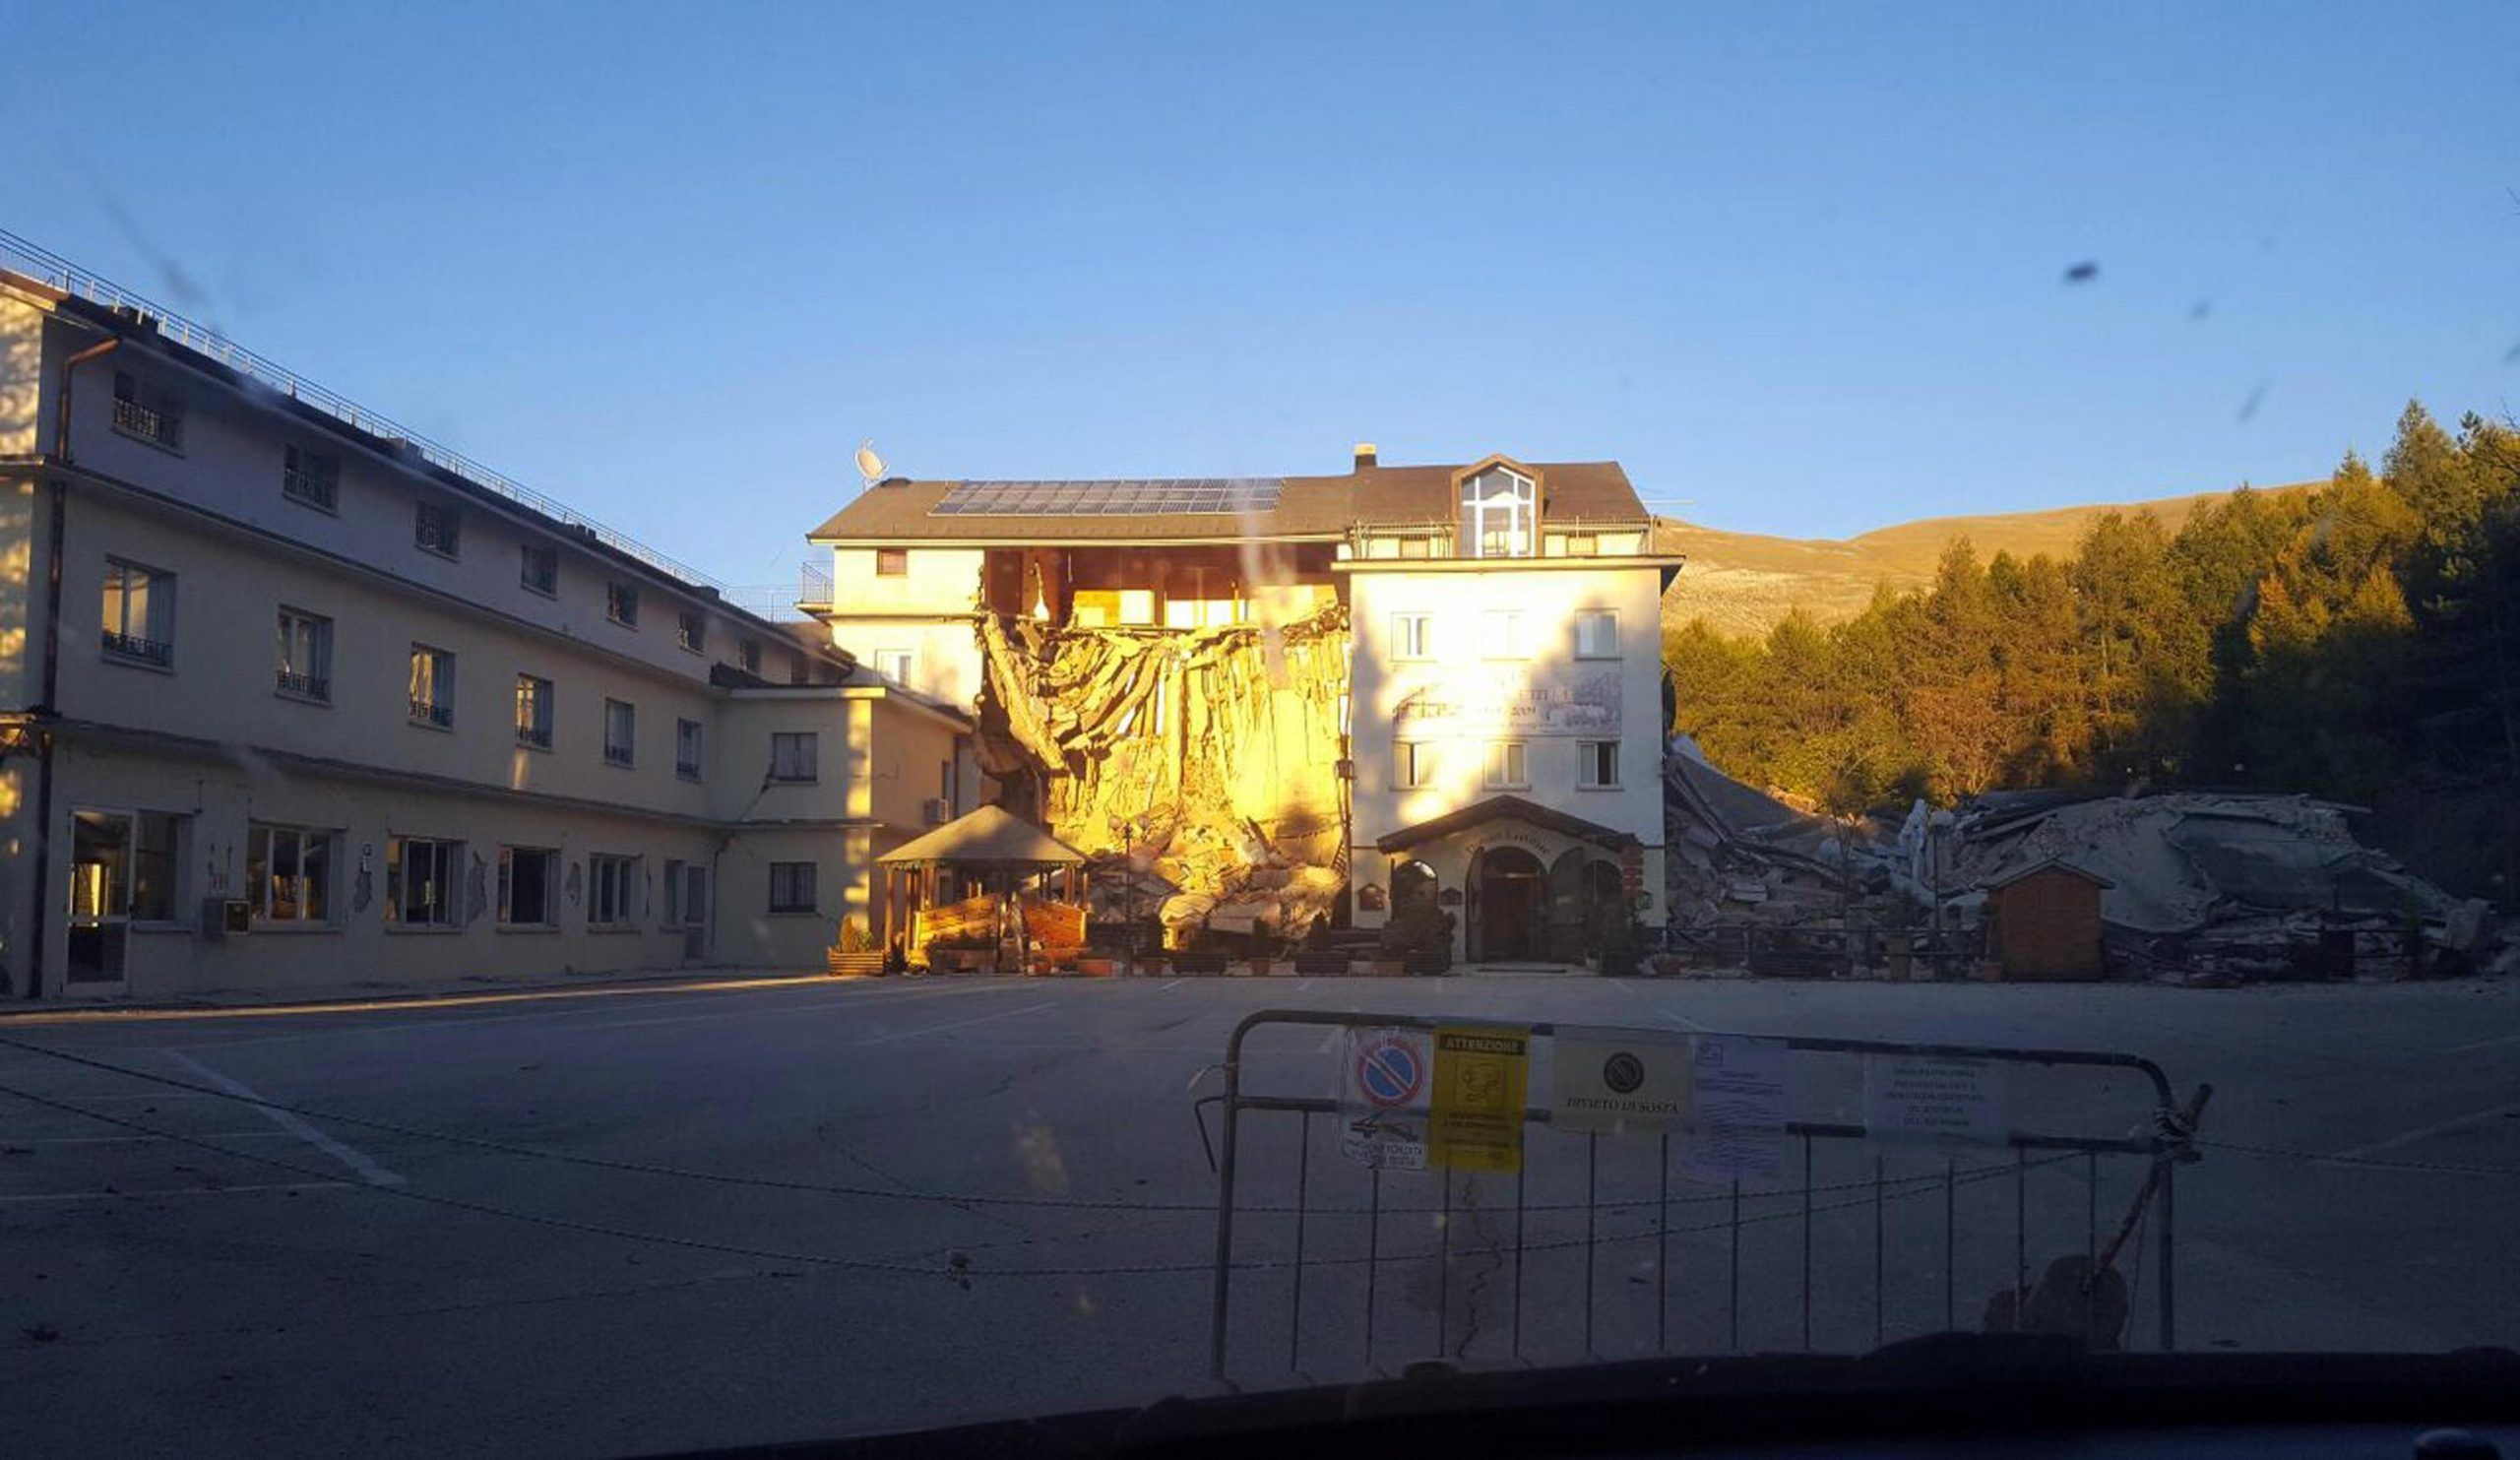 Terremoto: crollato hotel vicino impianti sciistici Ussita